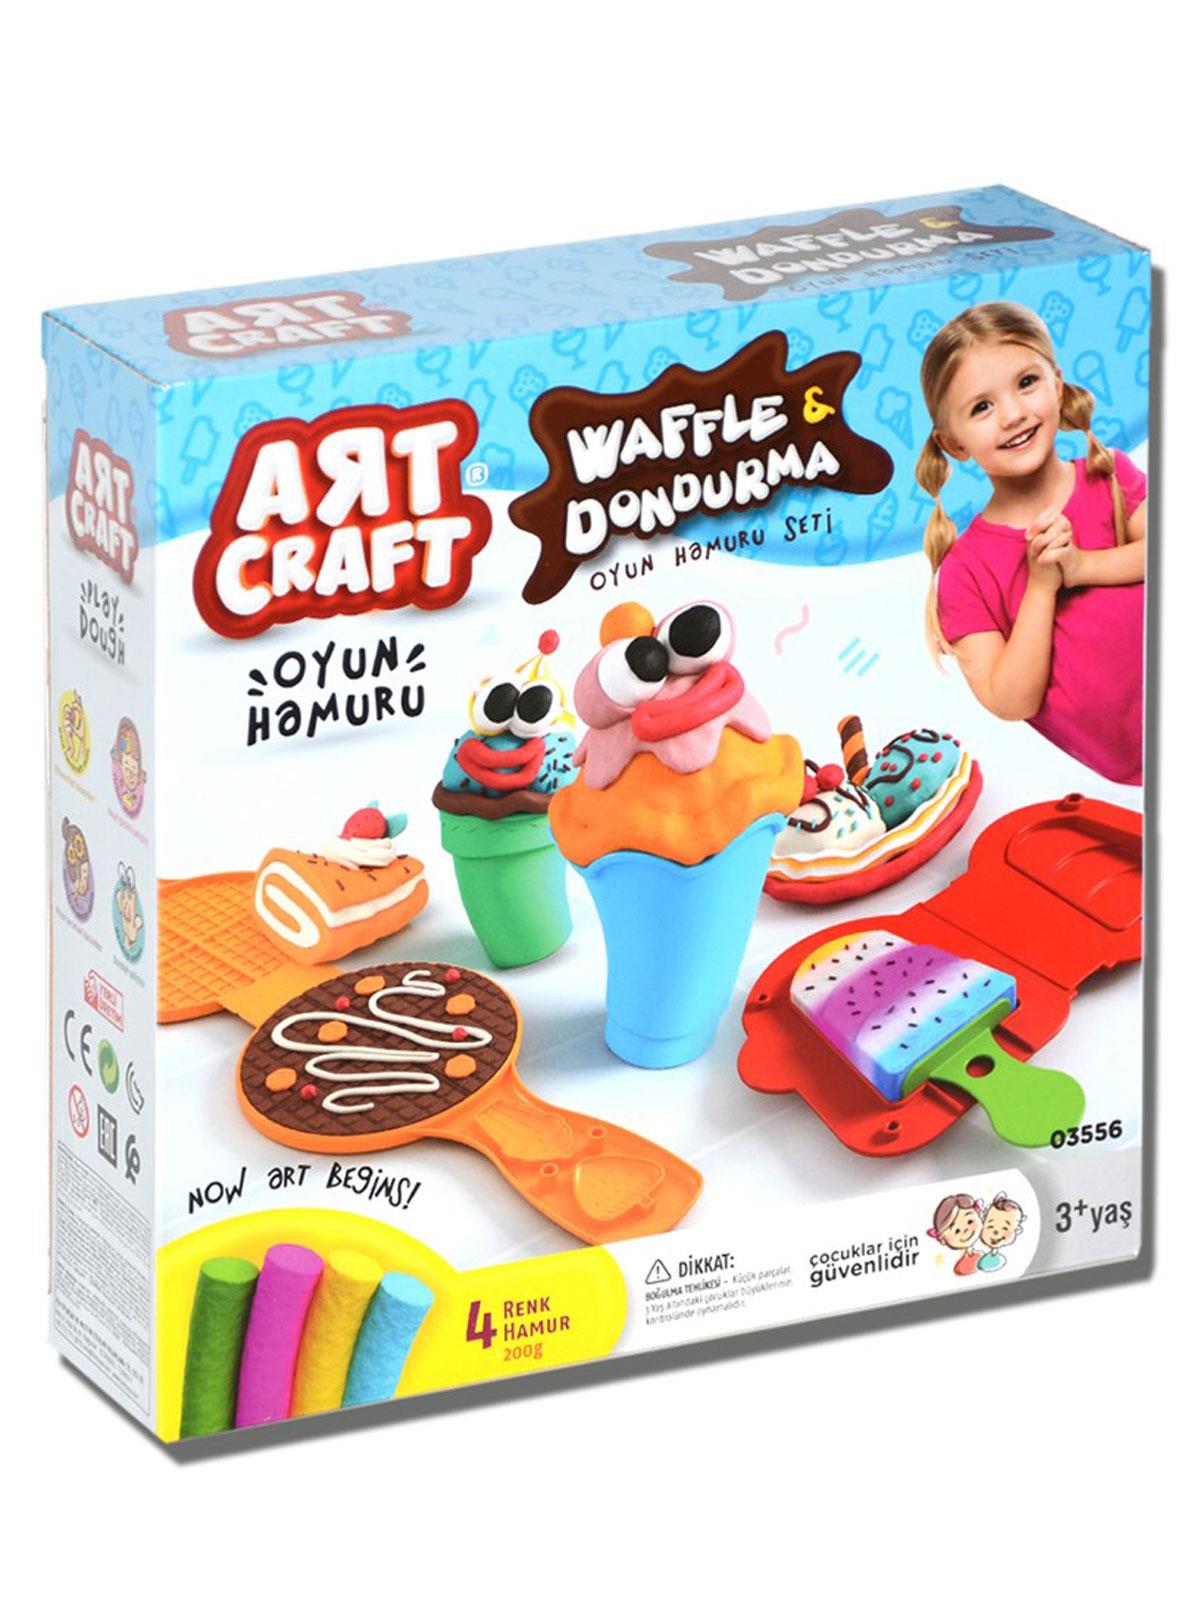 Art Craft Waffle & Dondurma Oyun Hamuru Seti 200 Gr